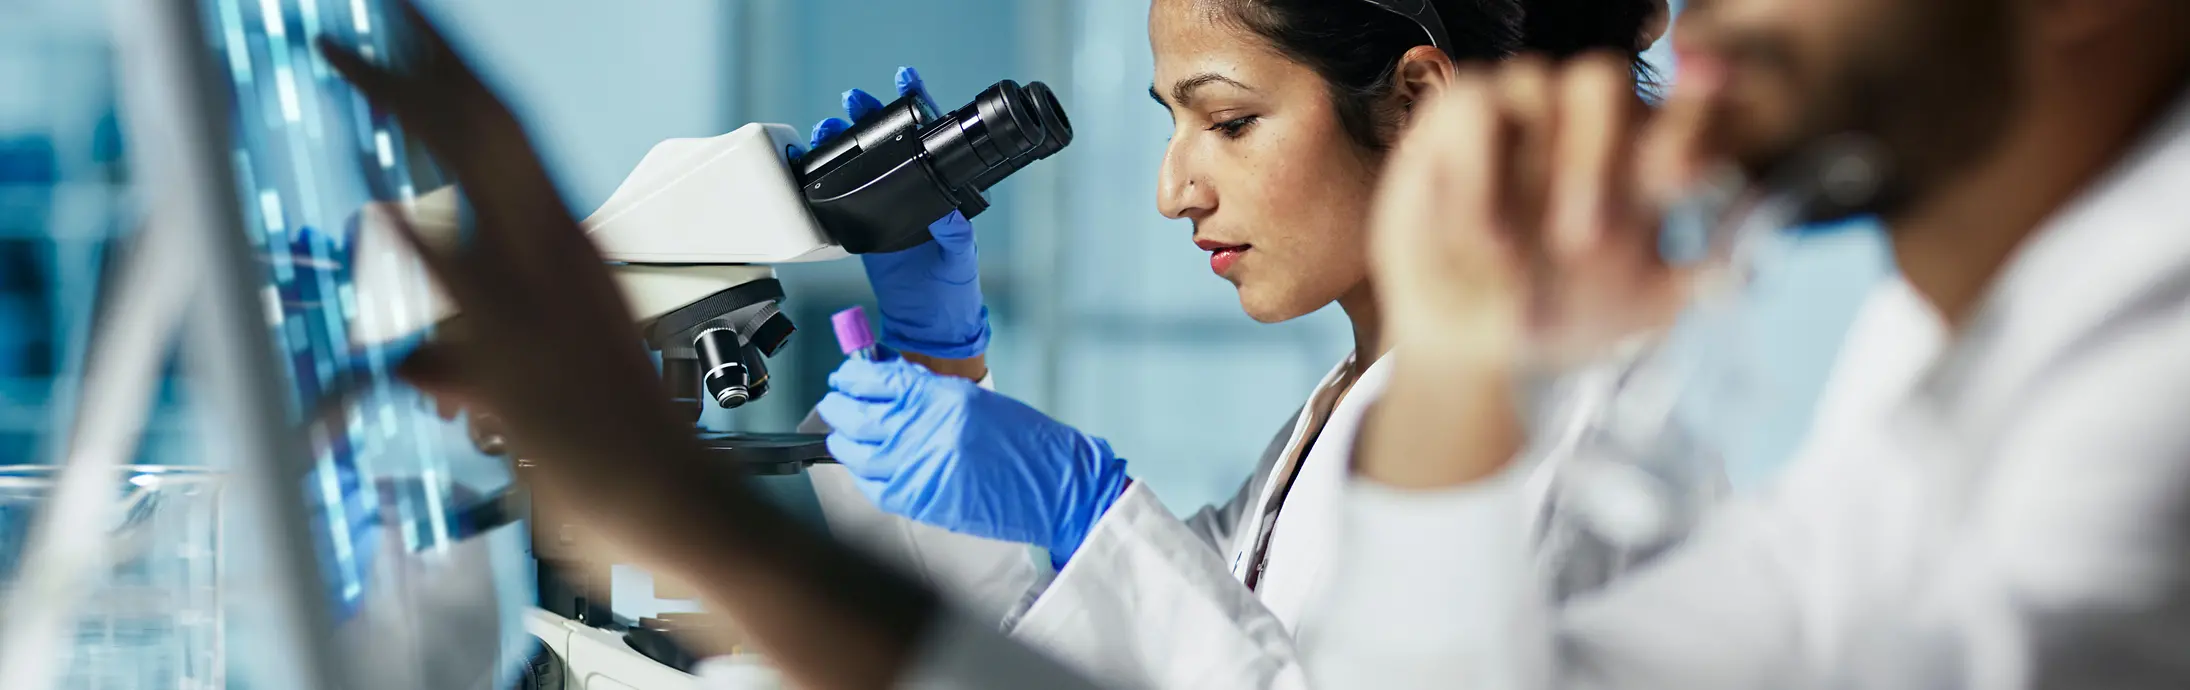 Laboratorij z žensko, ki sedi pred mikroskopom in si ogleduje vzorec, in moškim z brado spredaj, ki gleda v zaslon 